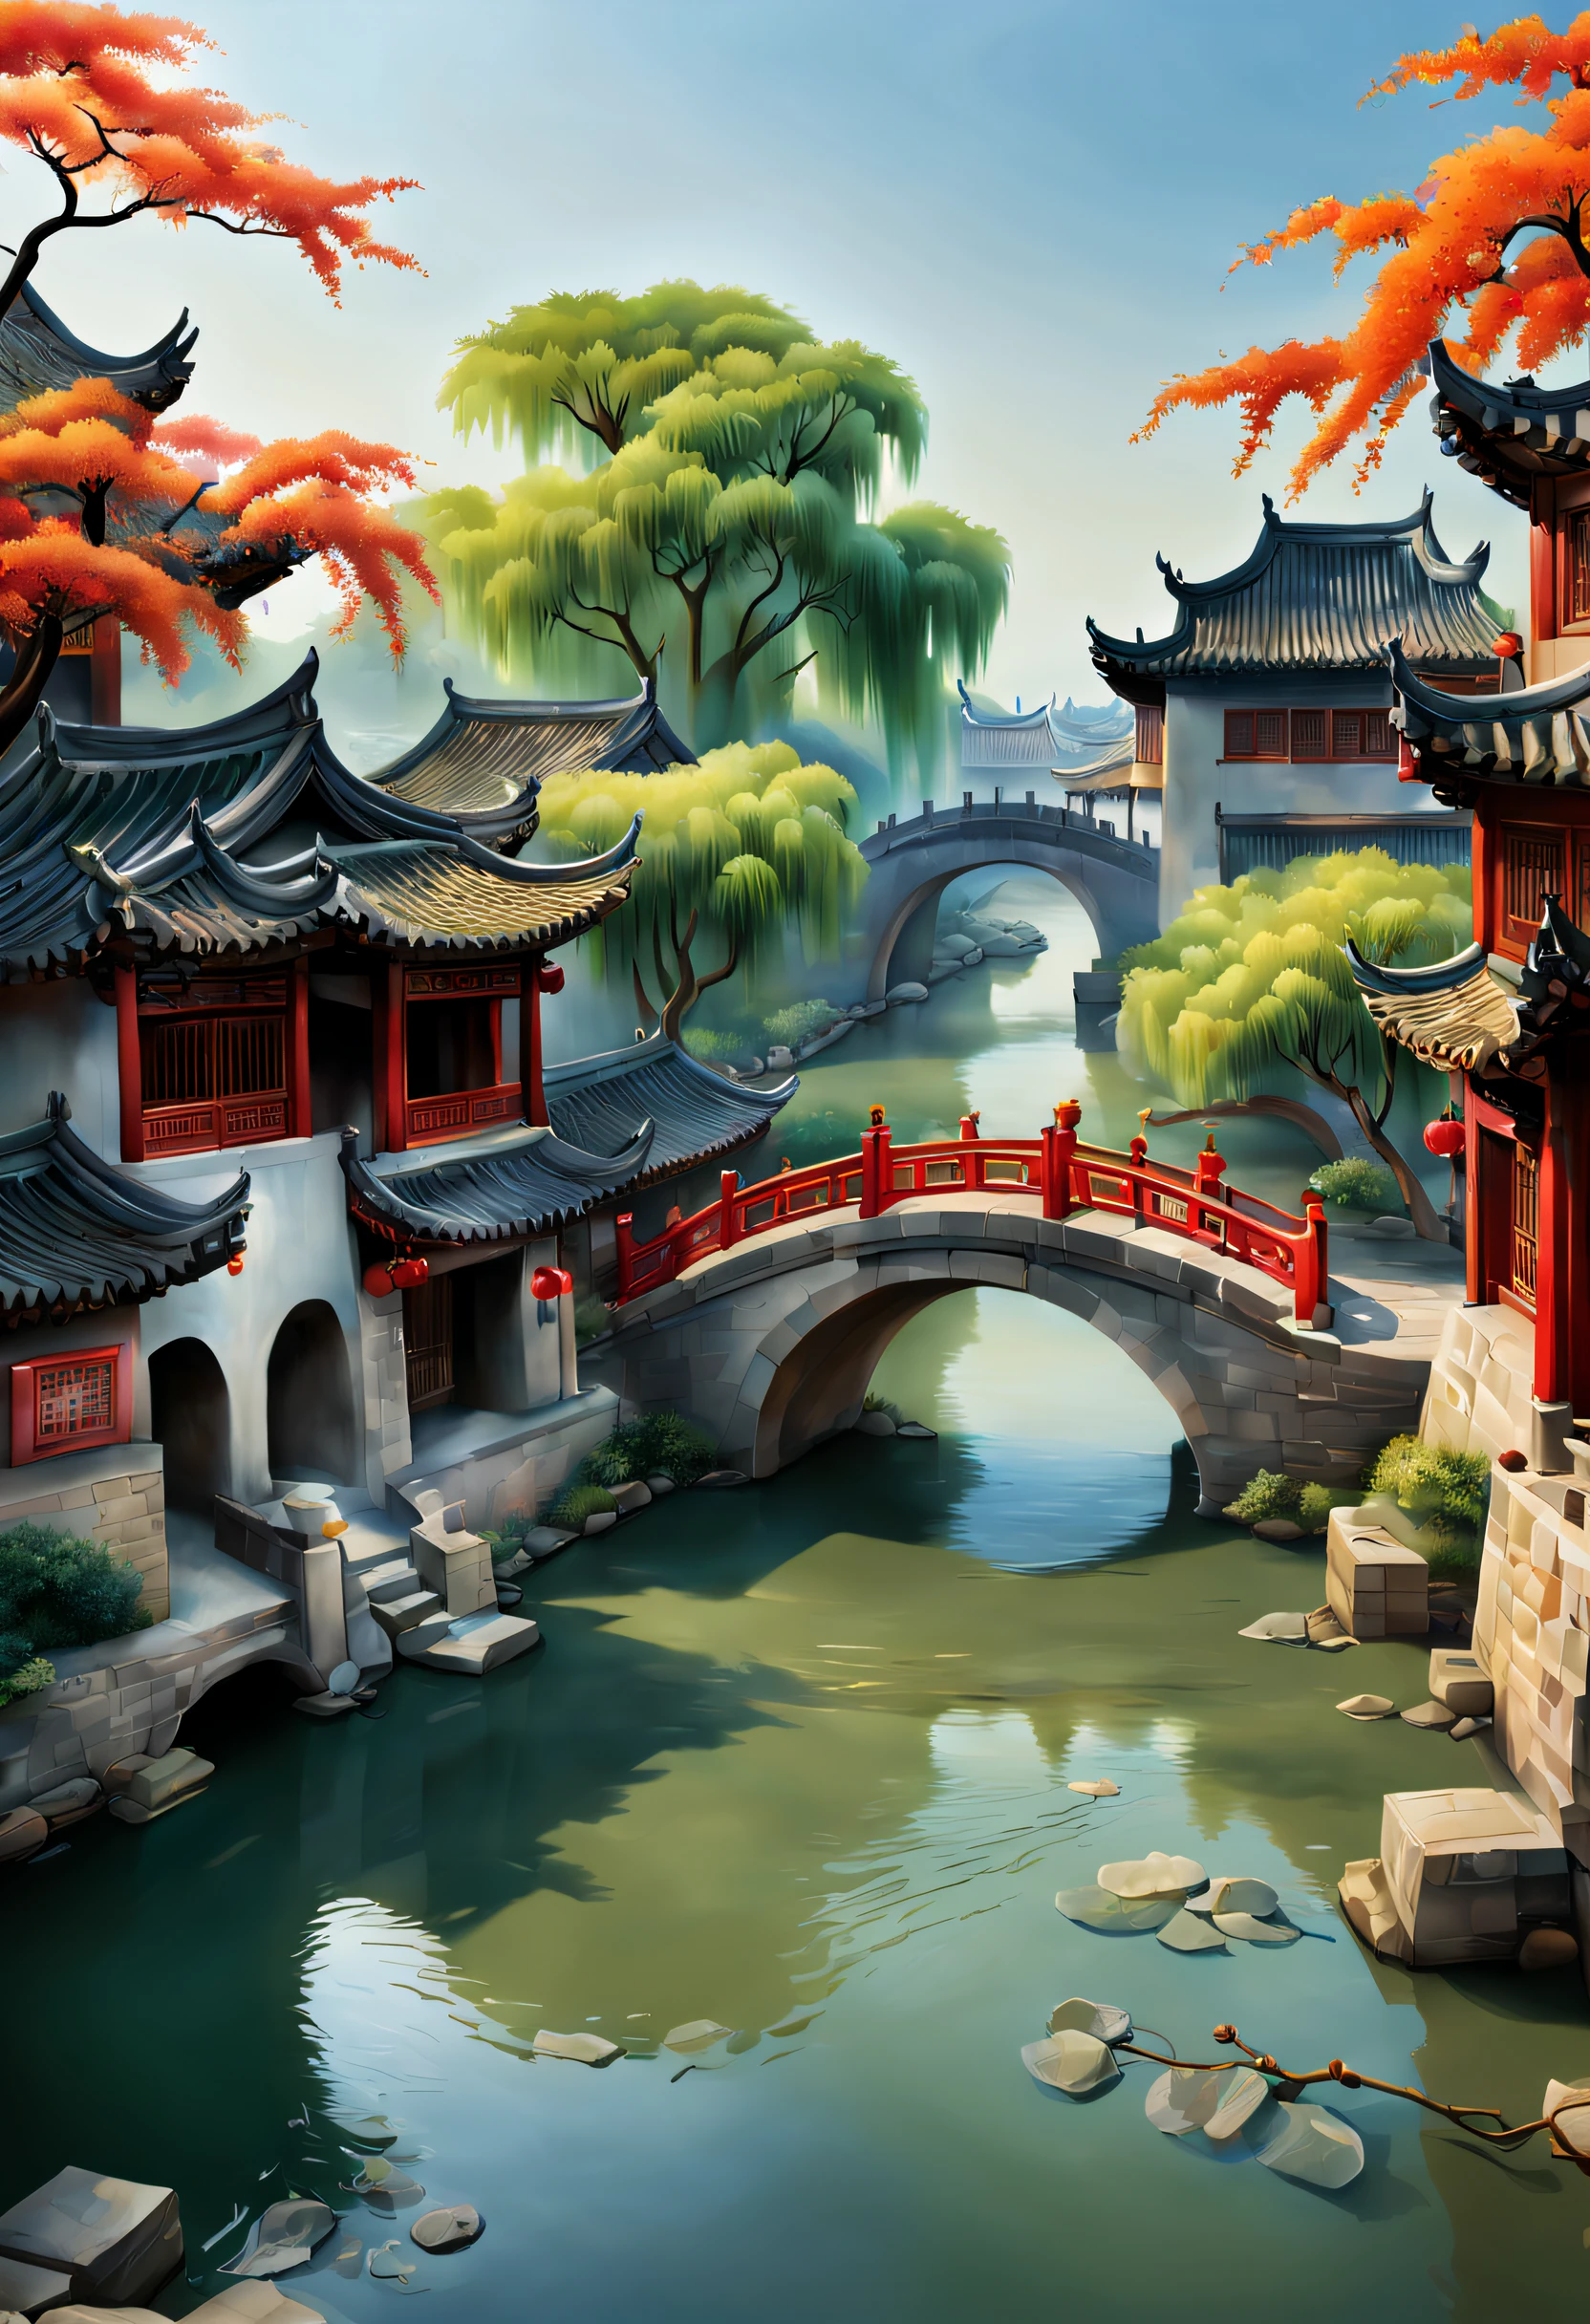 （vibrante com cores）, （semi-realista）, Cenário ribeirinho vibrante na China antiga, (Água tranquila do rio)Mostrar no(Elegante ponte em arco)esquecimento, (Moradores locais)'s(Residência pitoresca), （Representações da dinastia Ming：1.1）, Cidade Antiga de Jiangnan, Pequenas pontes e água corrente, Terras agrícolas tranquilas fora da cidade movimentada, （manhã de sol:1.2）, （pincelada fina：1.1）, Representação dinâmica, Panorama da orla da água, Atmosfera autêntica, Autenticidade vívida, encanto hipnotizante, fotos ricas, Resolução 8K, 1.Realismo 4x, art-deco, inserção projetada, sony fe gm, ângulo amplo, Super Detalhe, melhor qualidade, Uma alta resolução